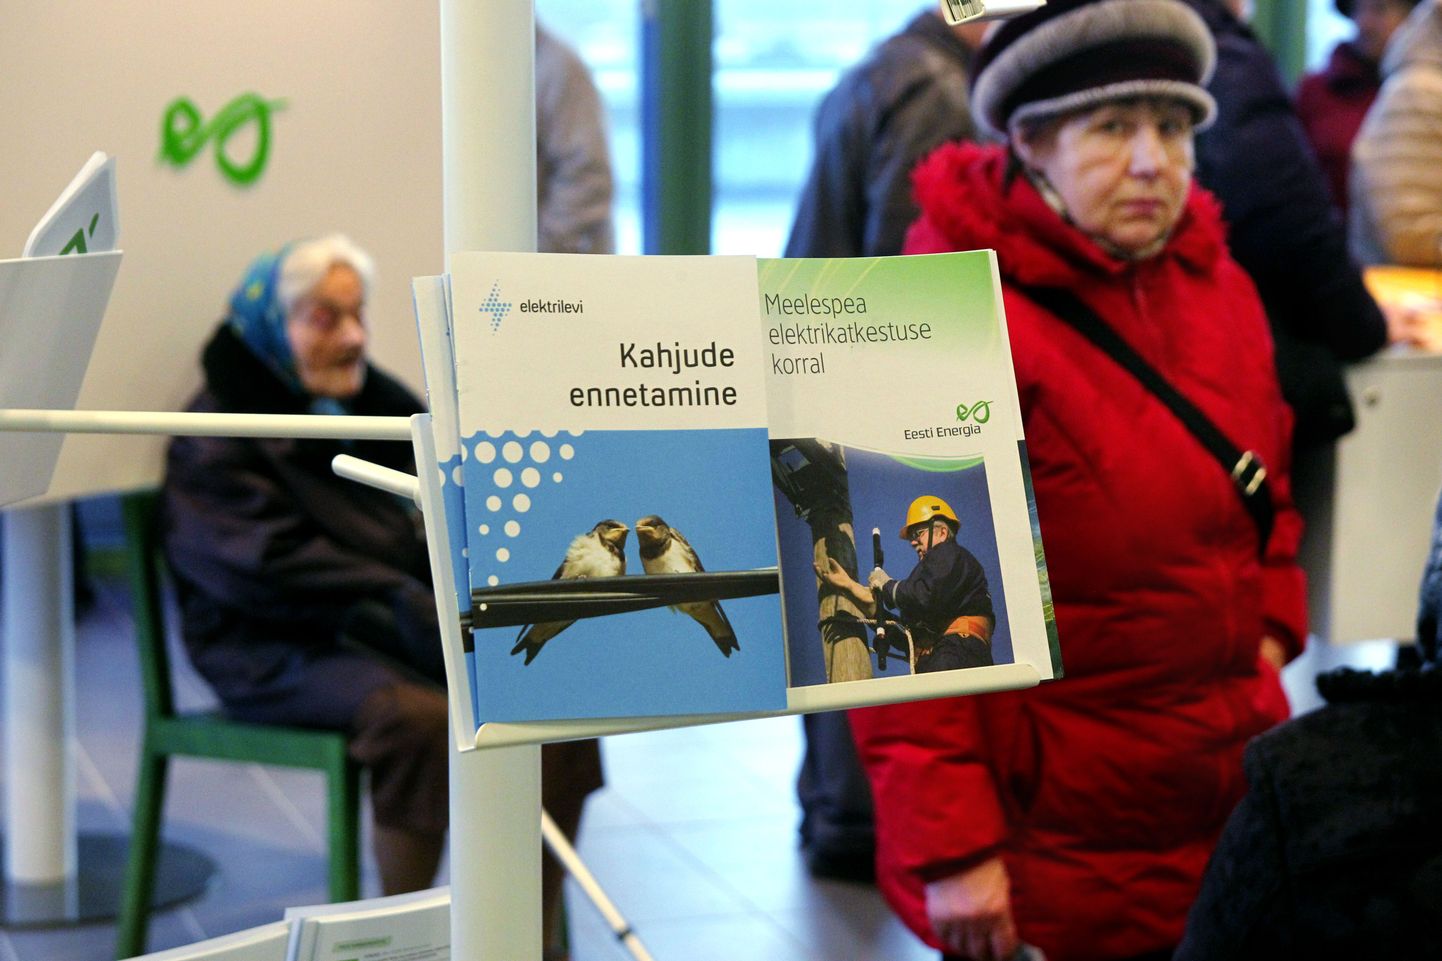 Põhiliselt on Eesti Energia klienditeenindusse uut elektrilepingut sõlmima tulnud pensionärid.